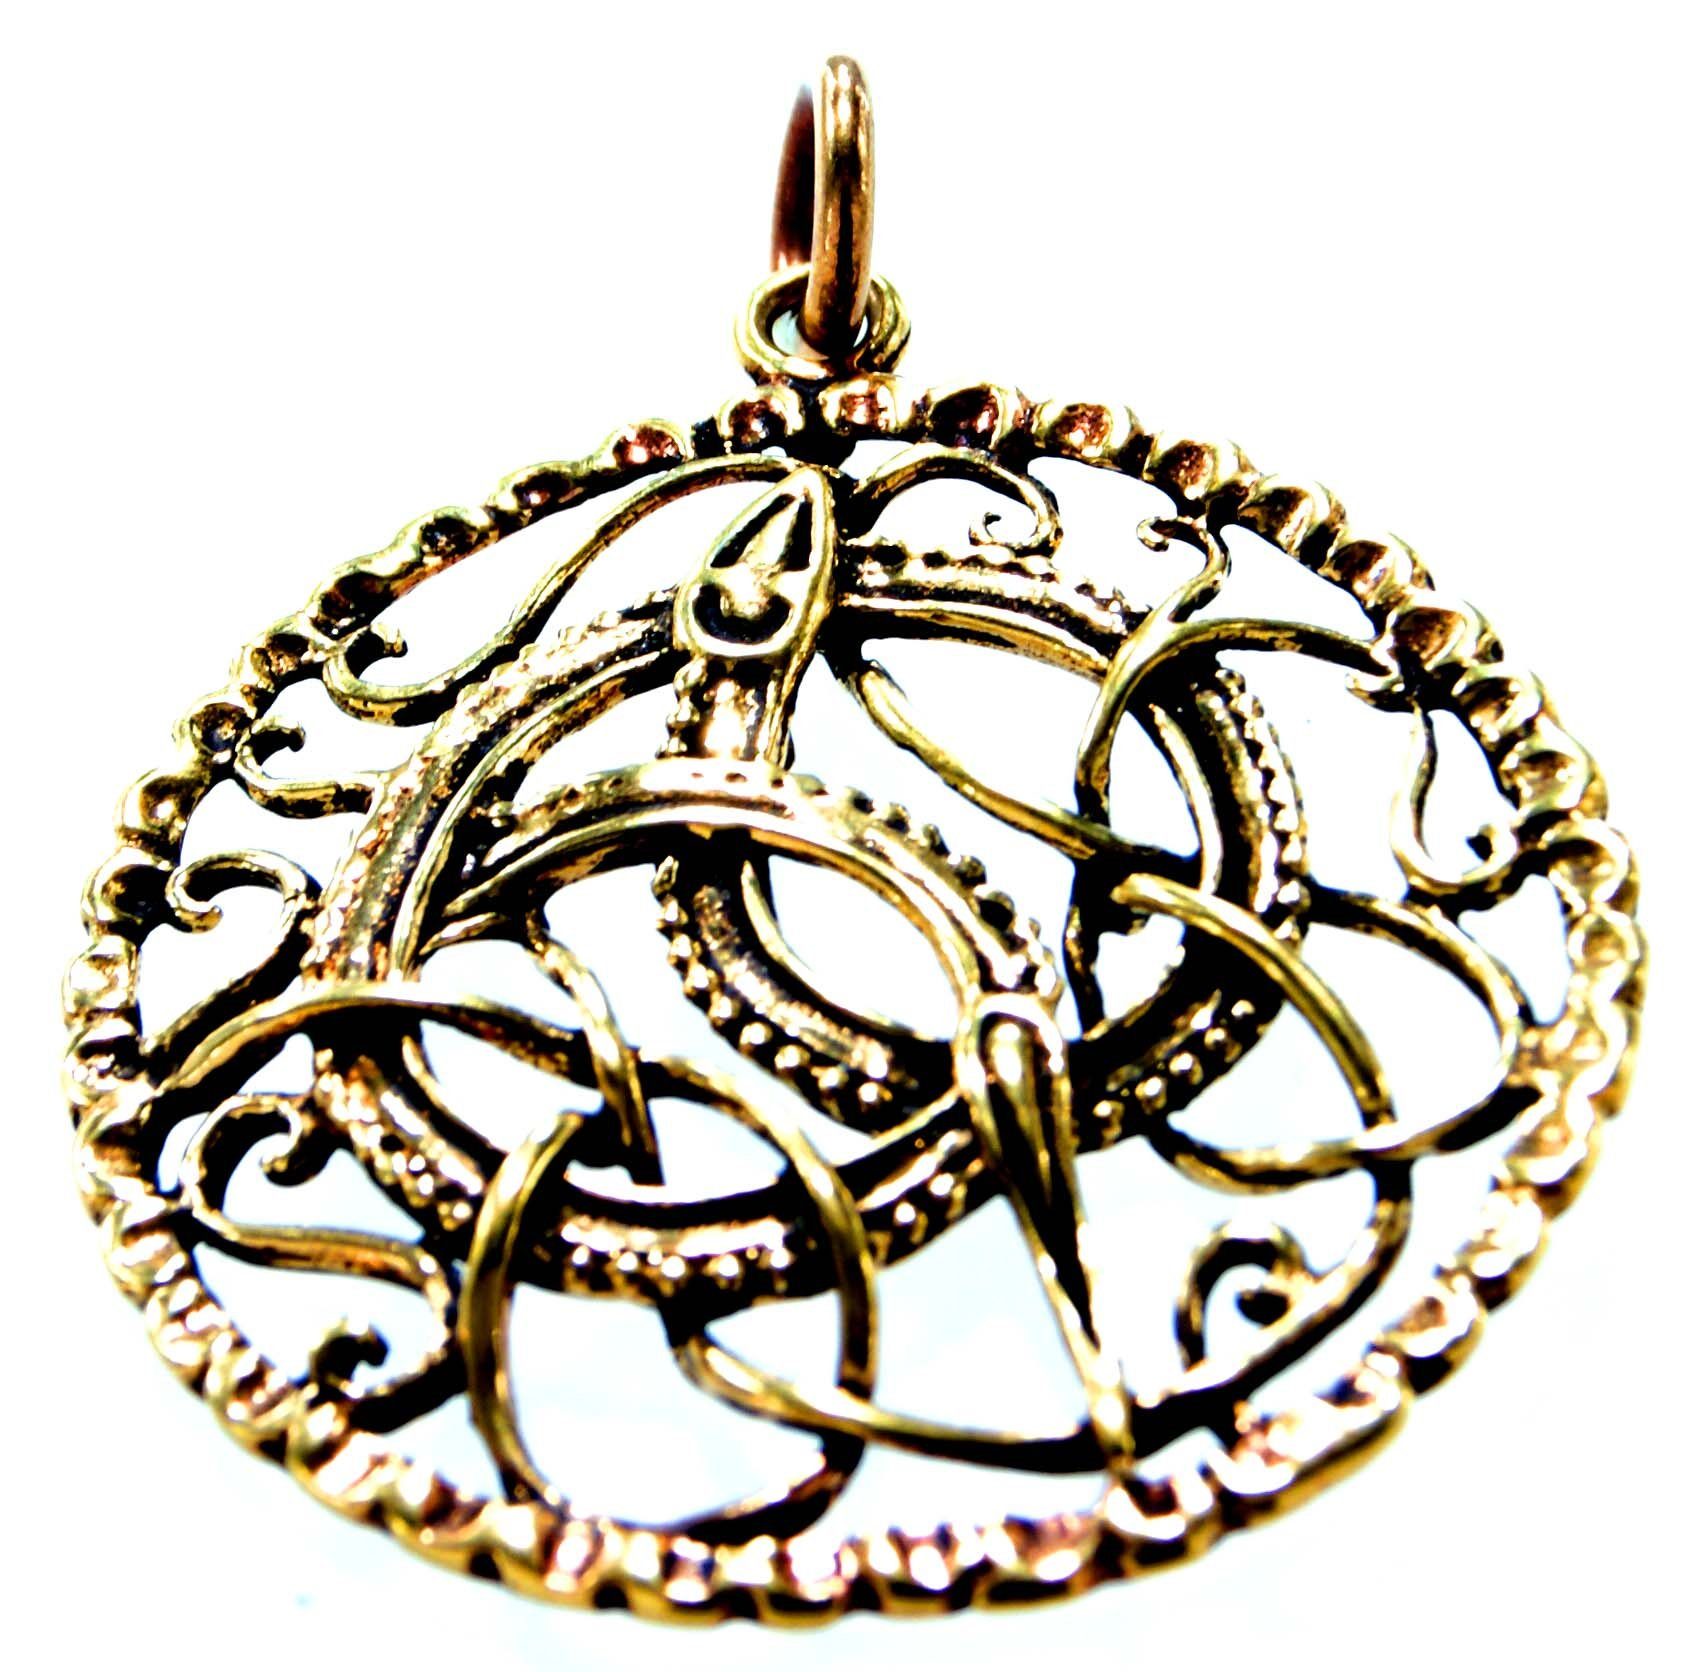 Midgardschlange Leather Kettenanhänger Anhänger großer of Amulett Kiss Schlange Bronze Schlangen Midgard